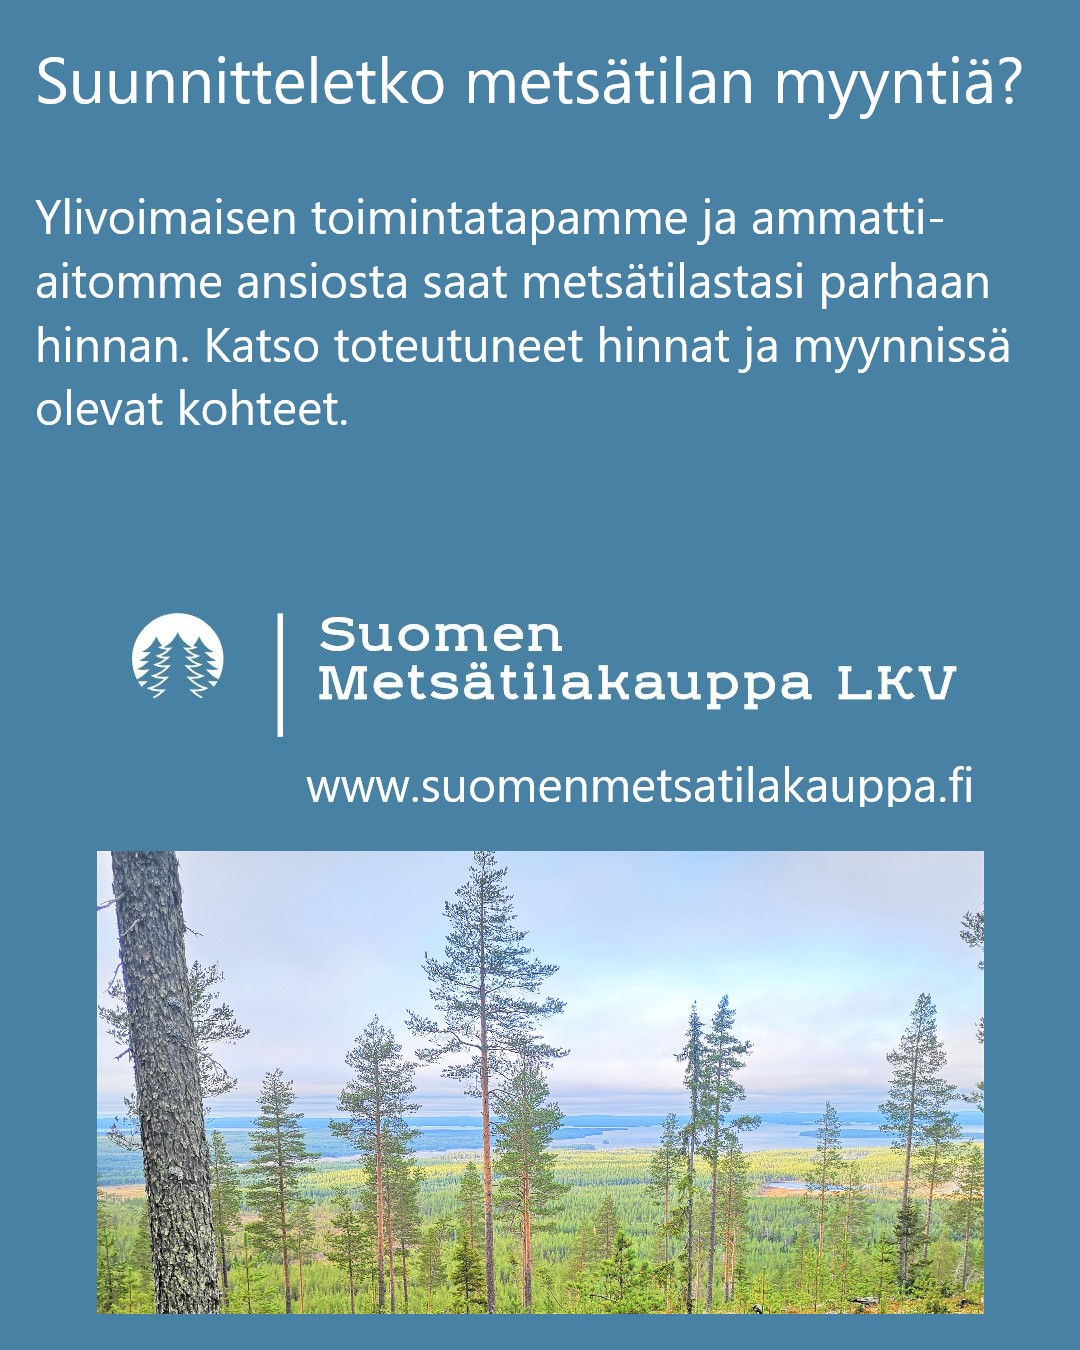 Mainos Suomenmetsatilakauppa.fi